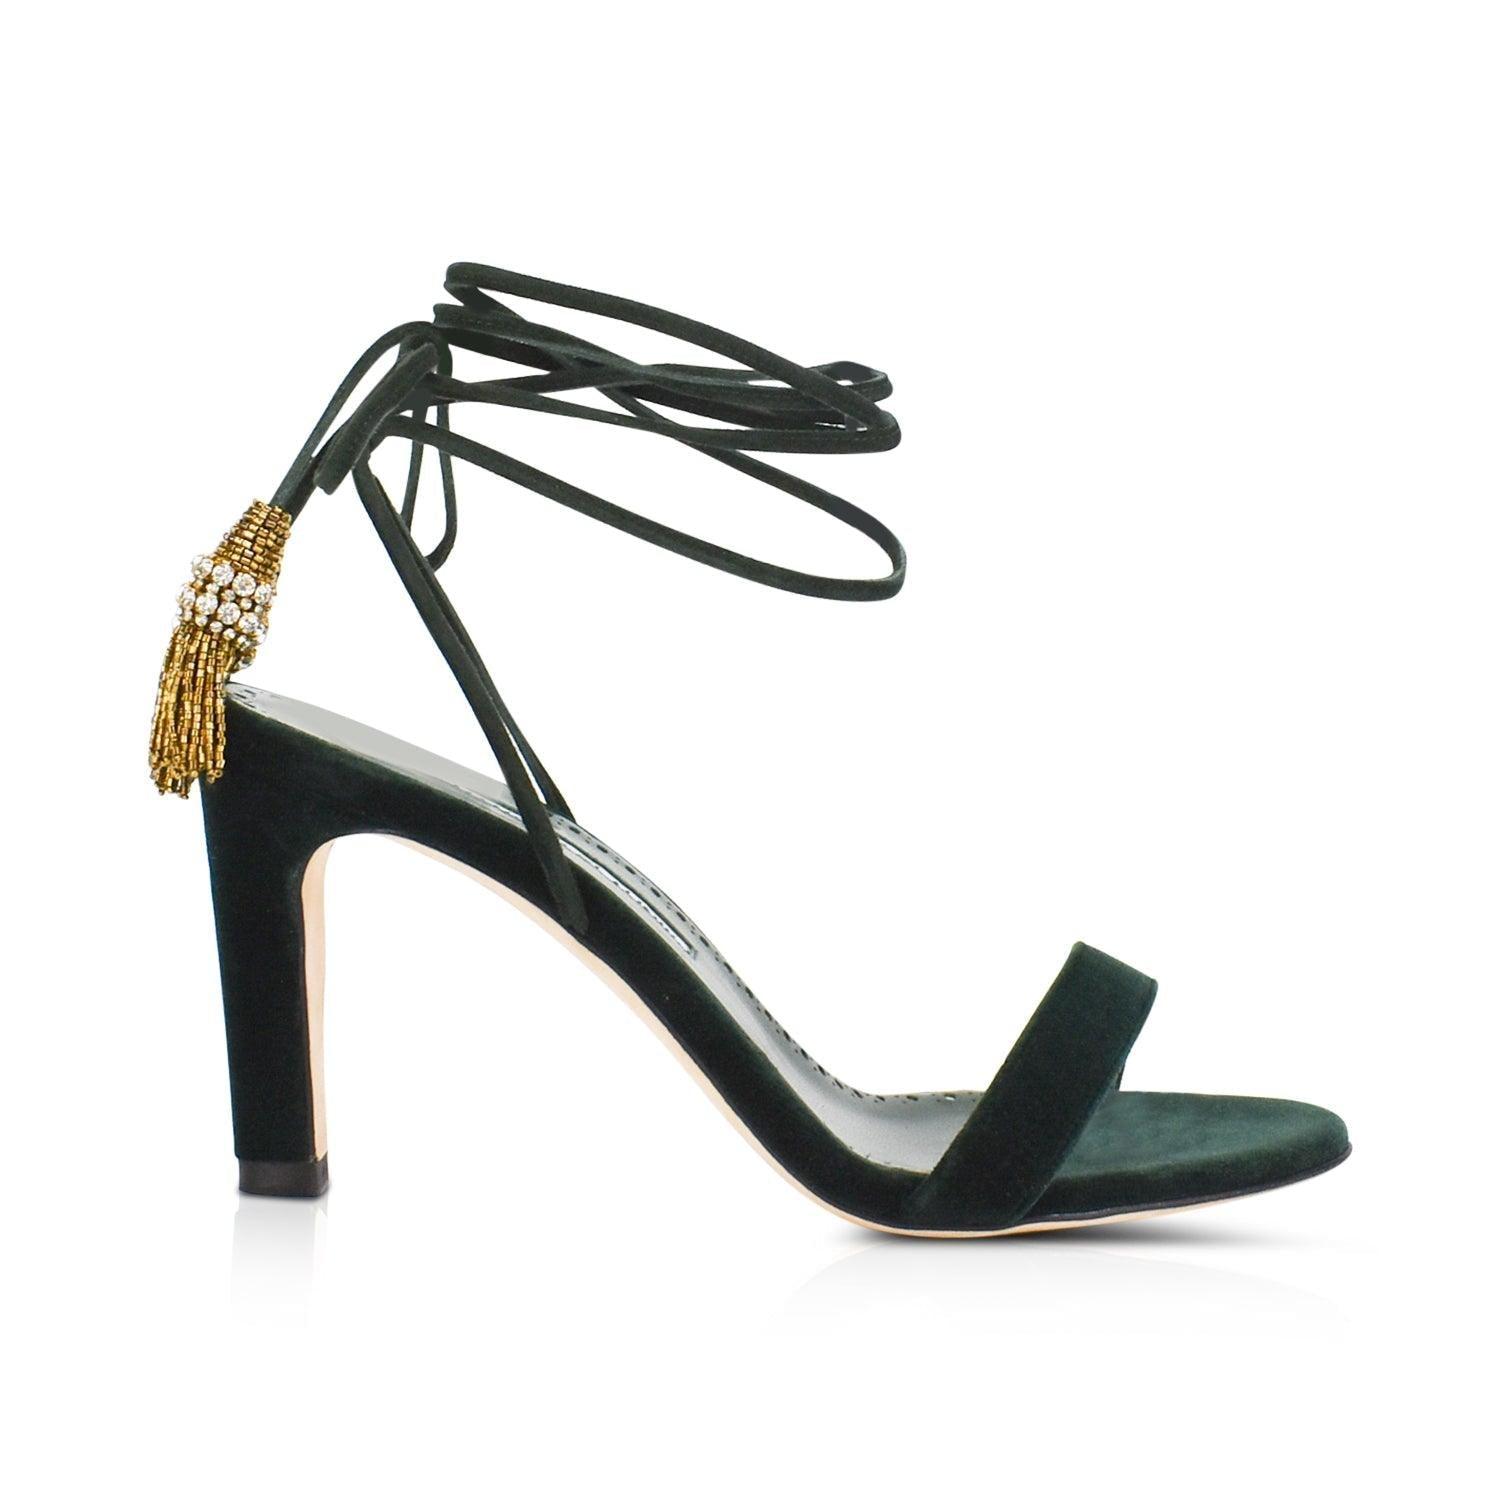 Manolo Blahnik Heels - Women's 38 - Fashionably Yours